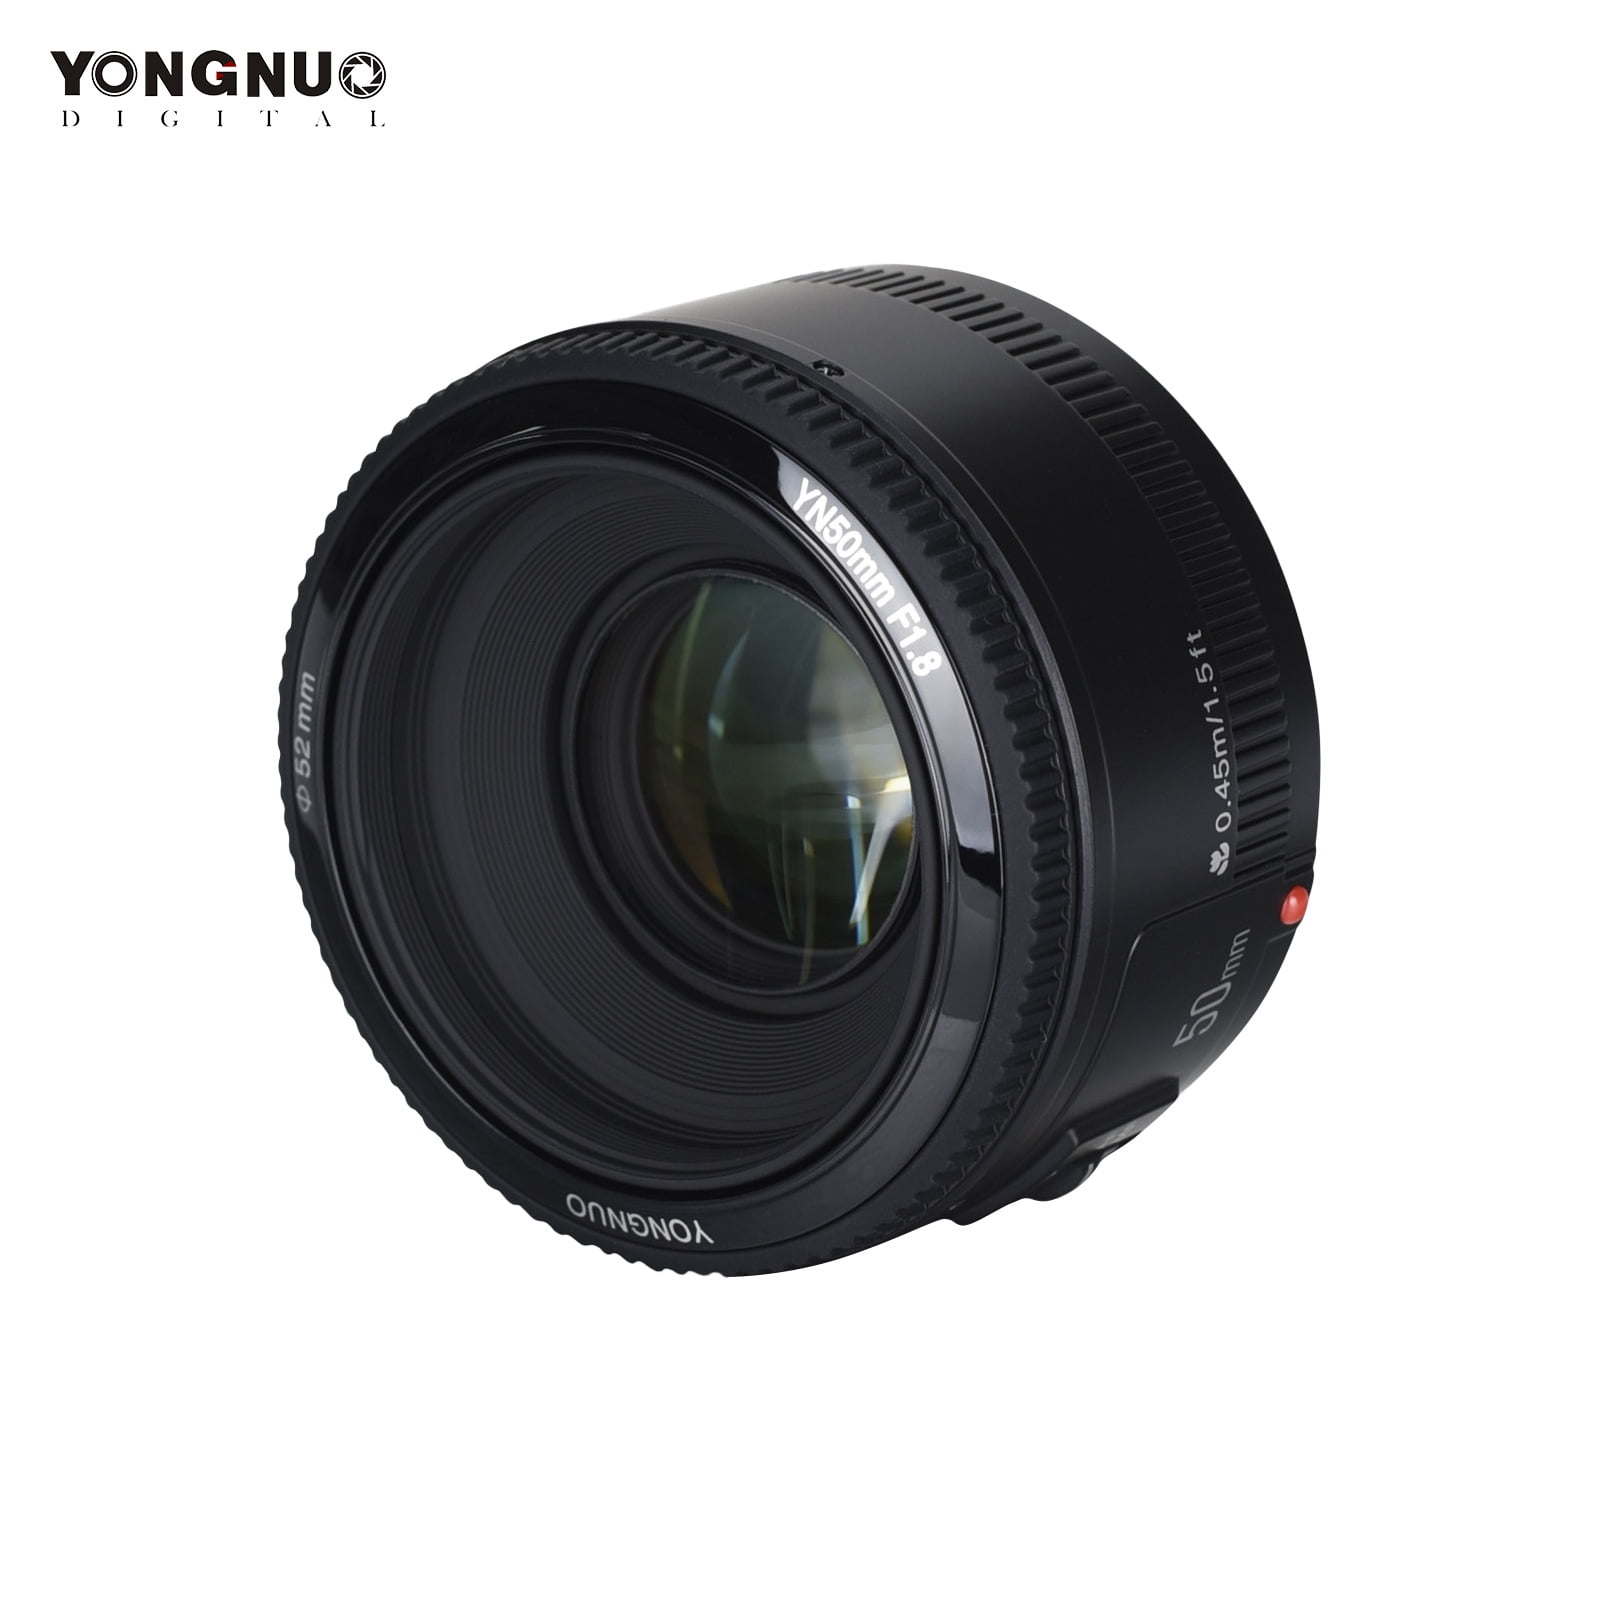 YONGNUO YN 50mm F1.8 Standard Prime Lens Large Aperture Auto Manual Focus AF MF for Nikon DSLR Cameras